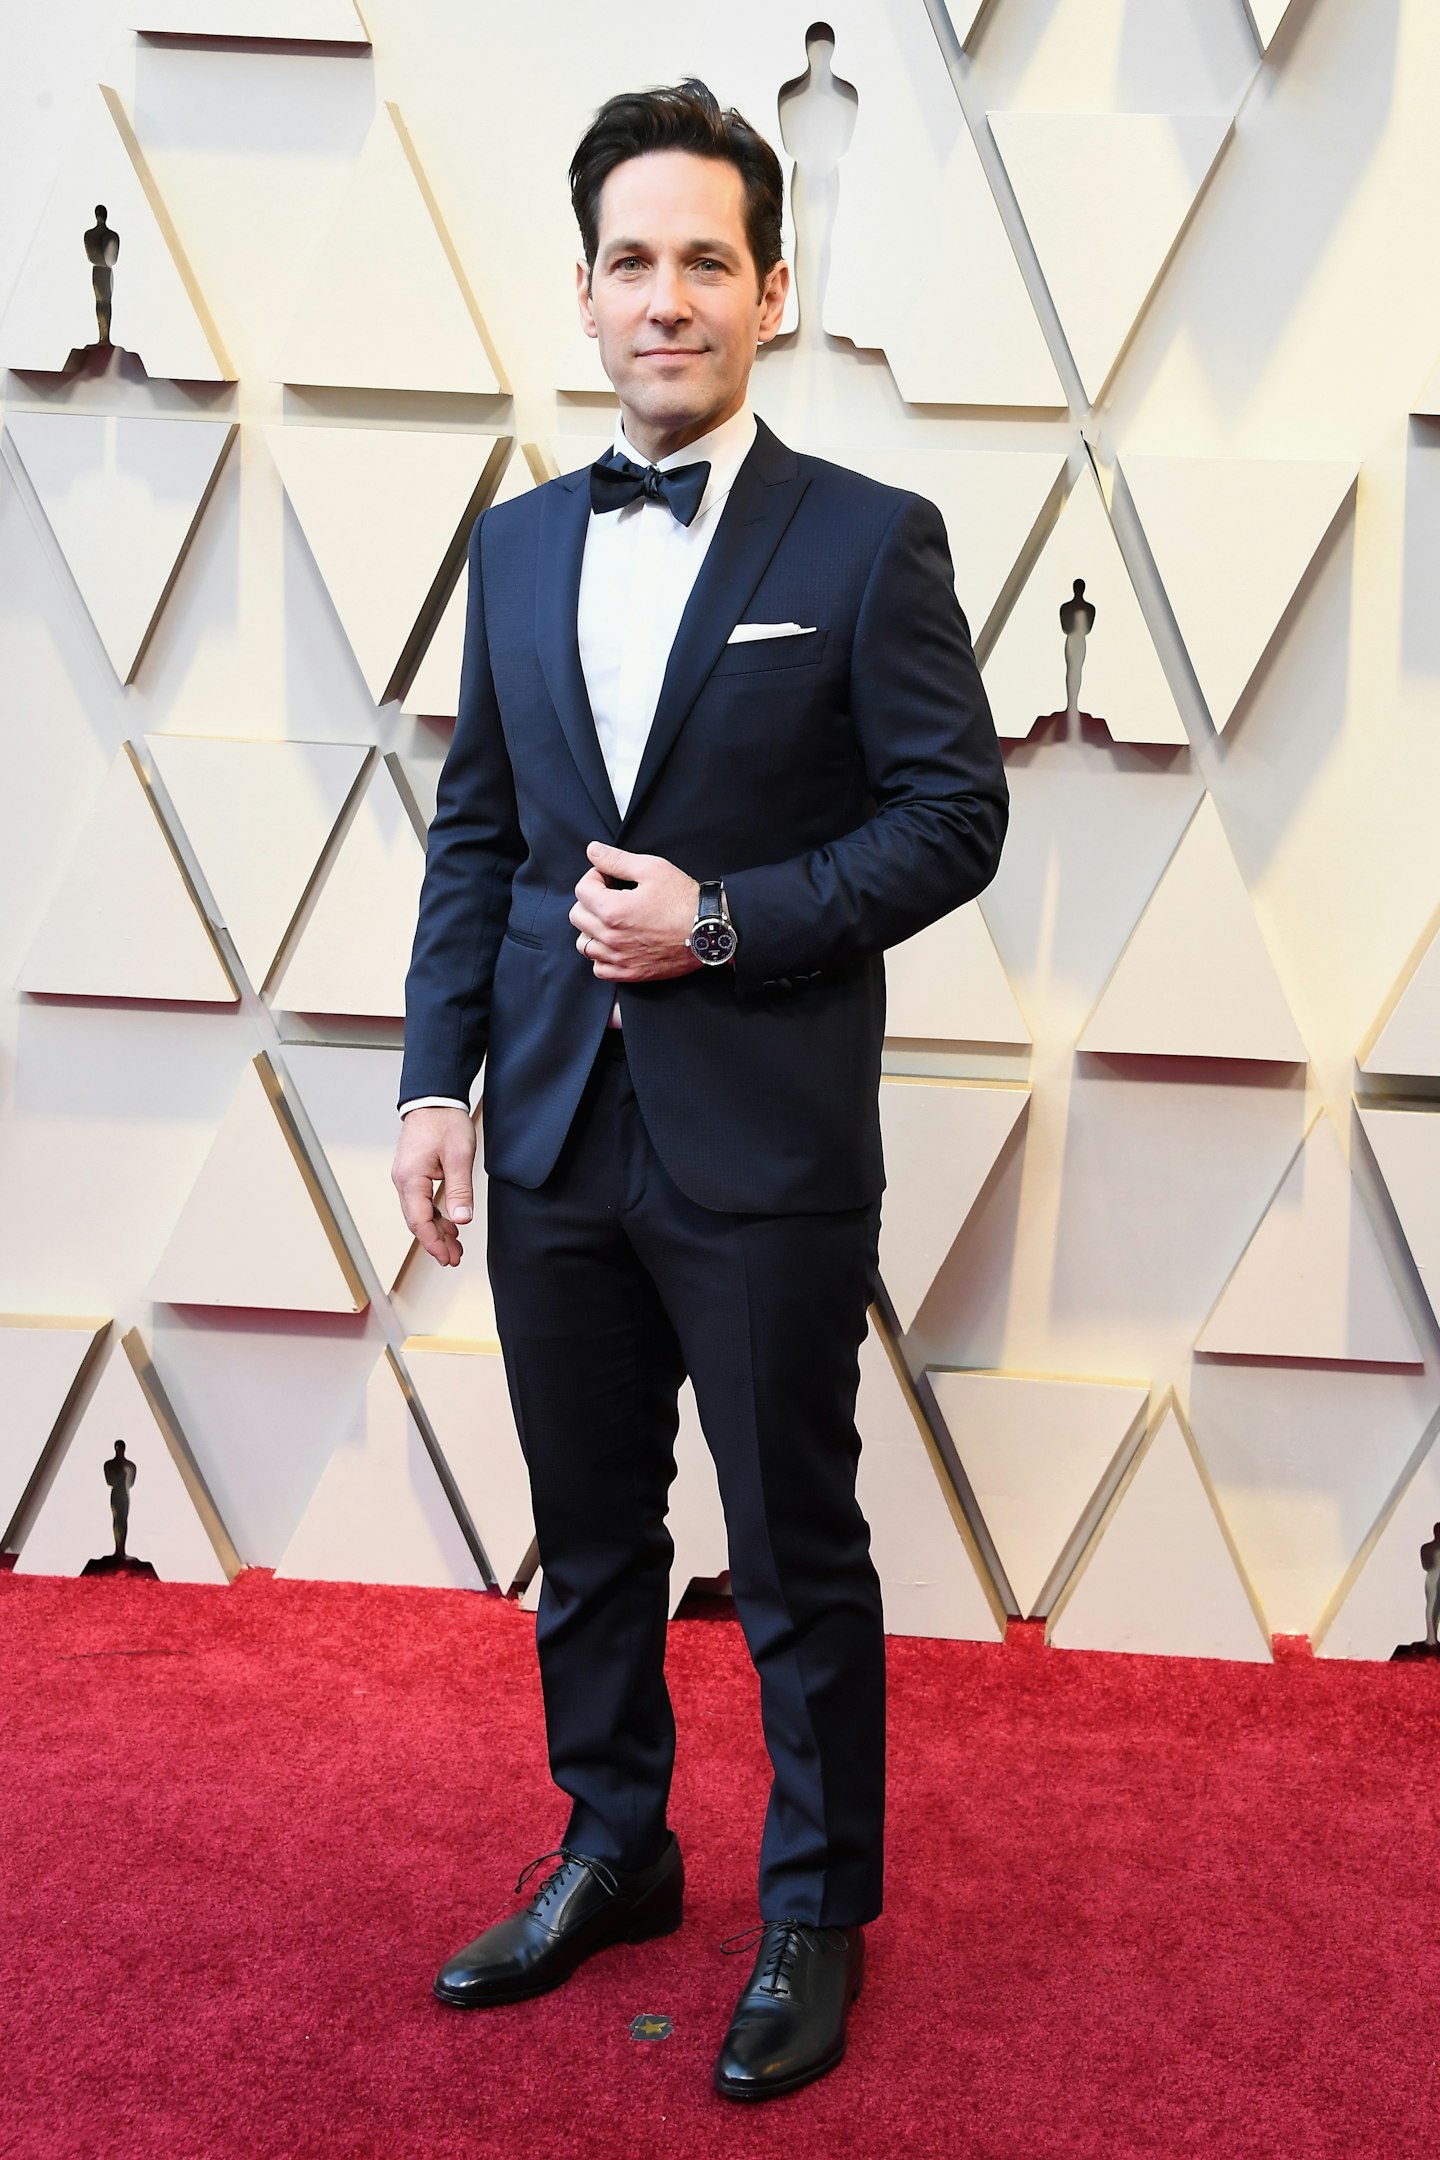 Paul Rudd at the 2019 Oscars